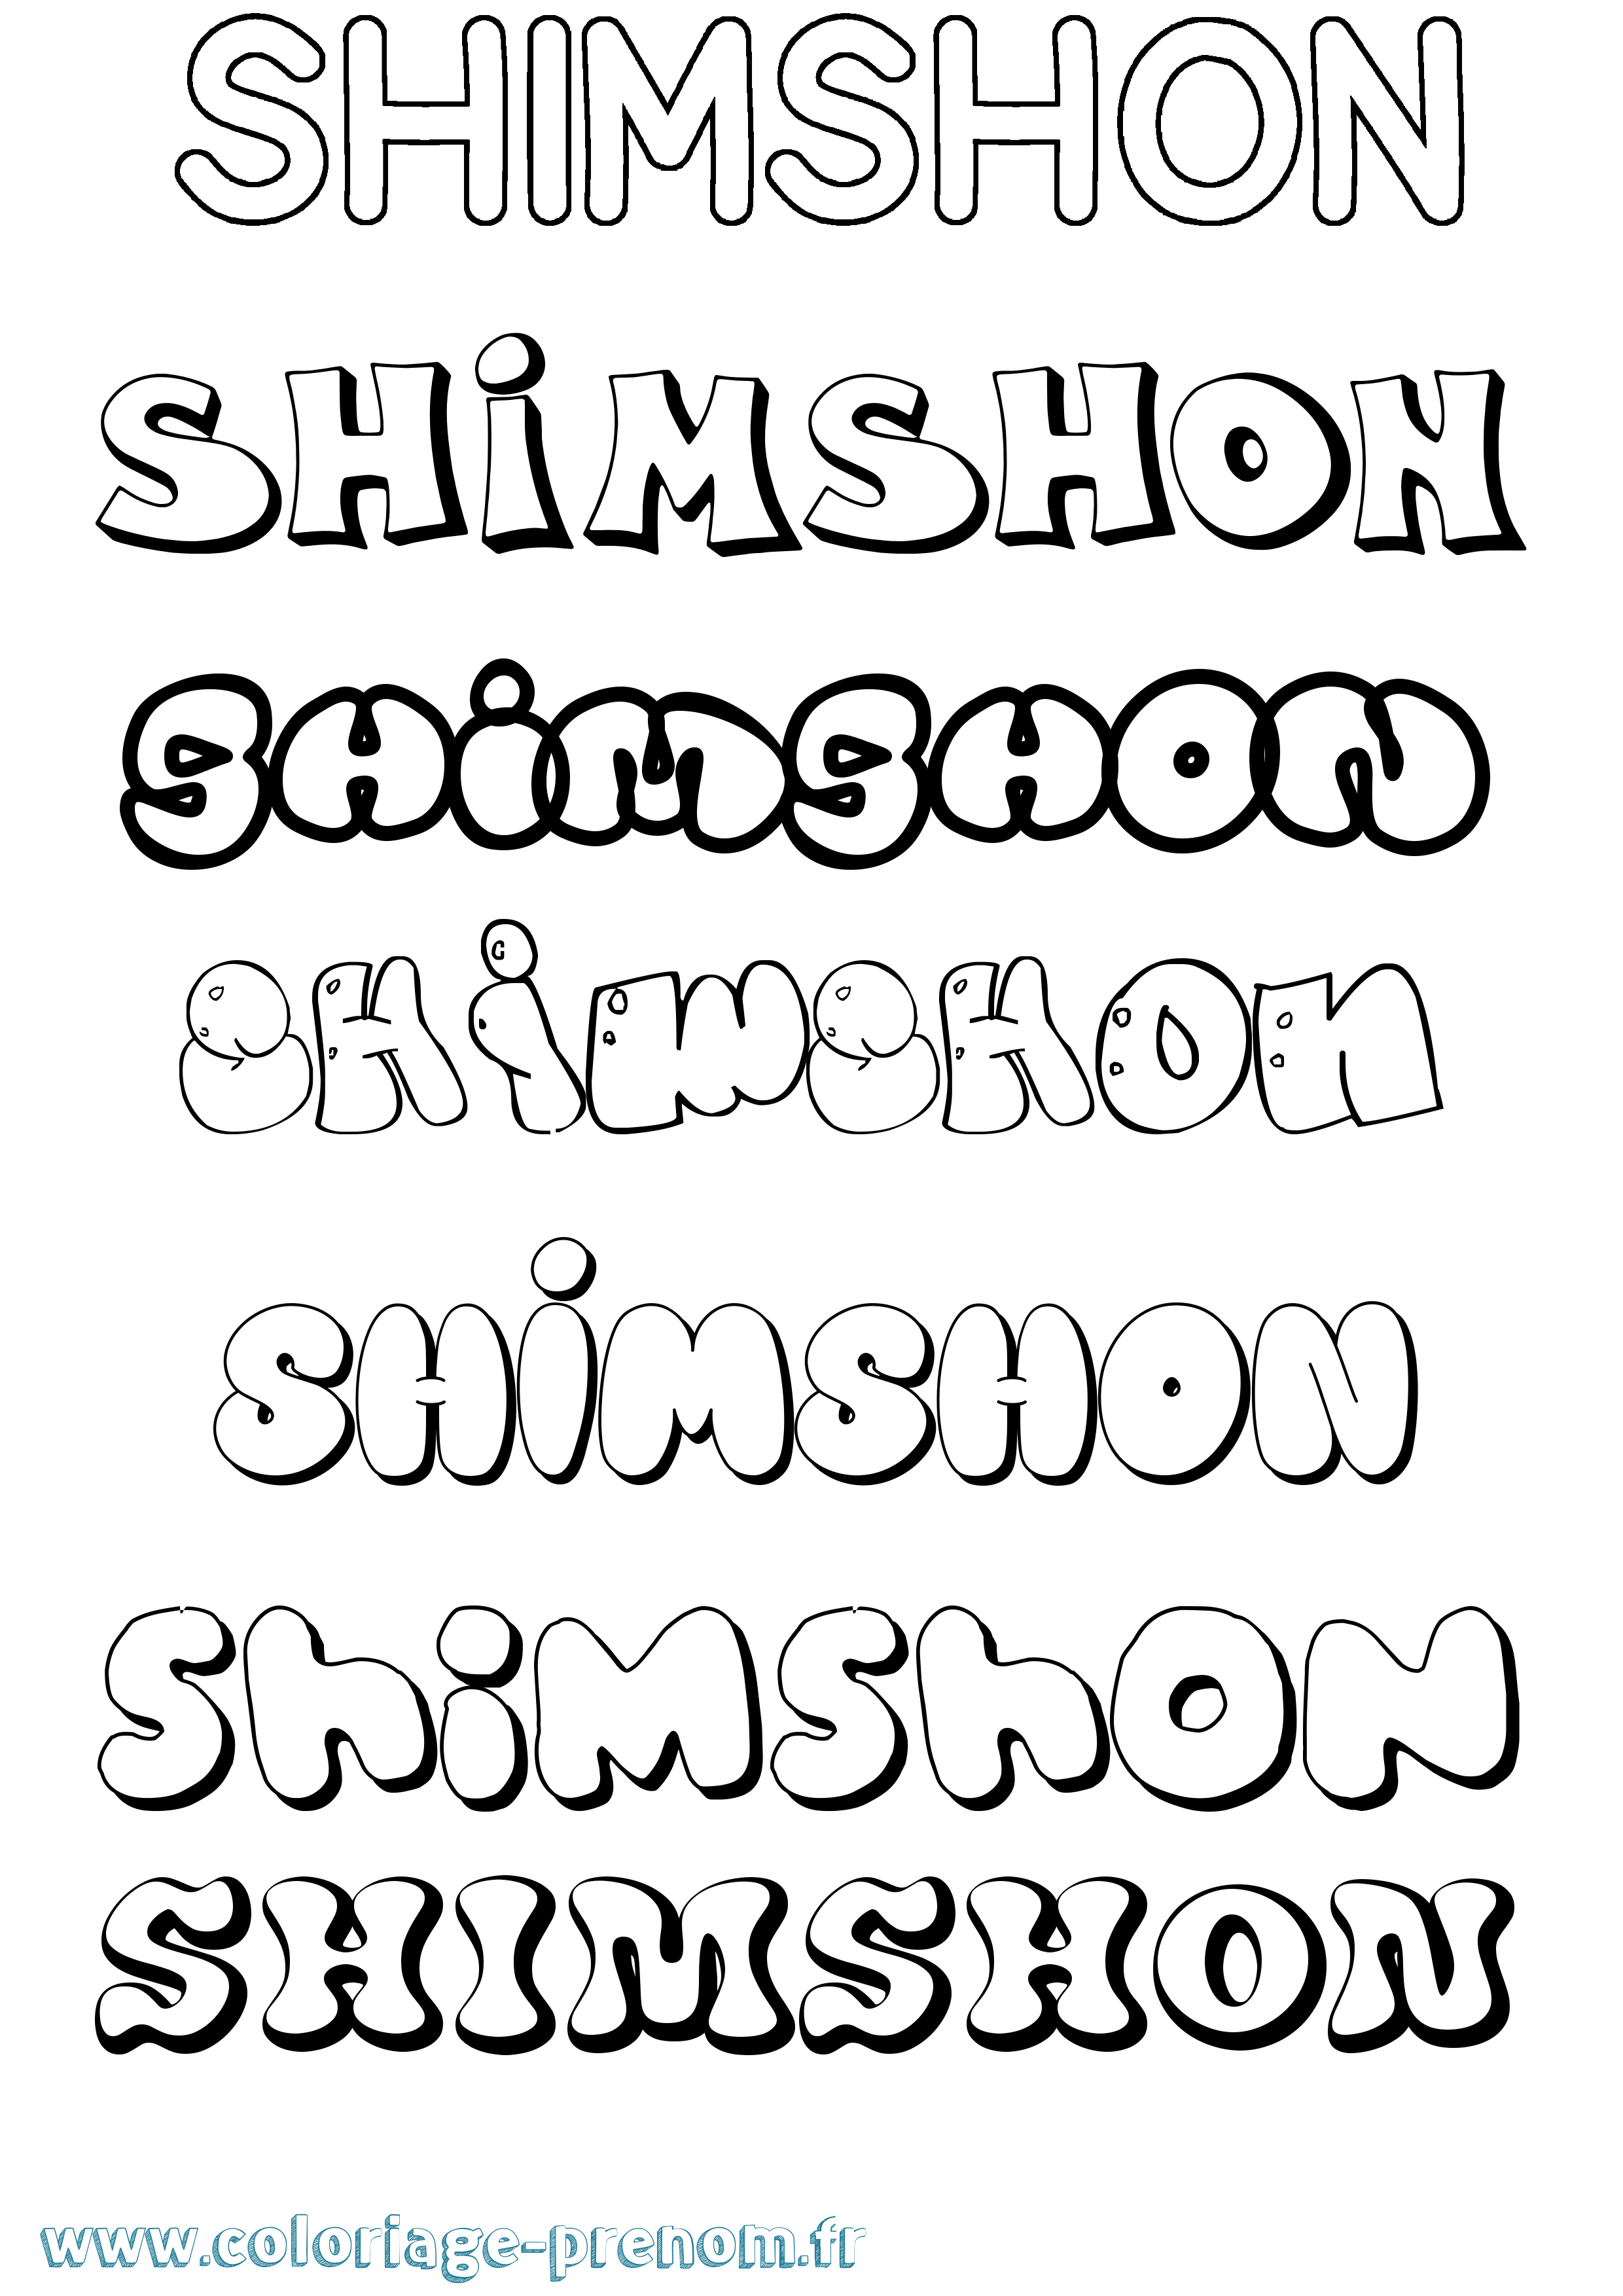 Coloriage prénom Shimshon Bubble